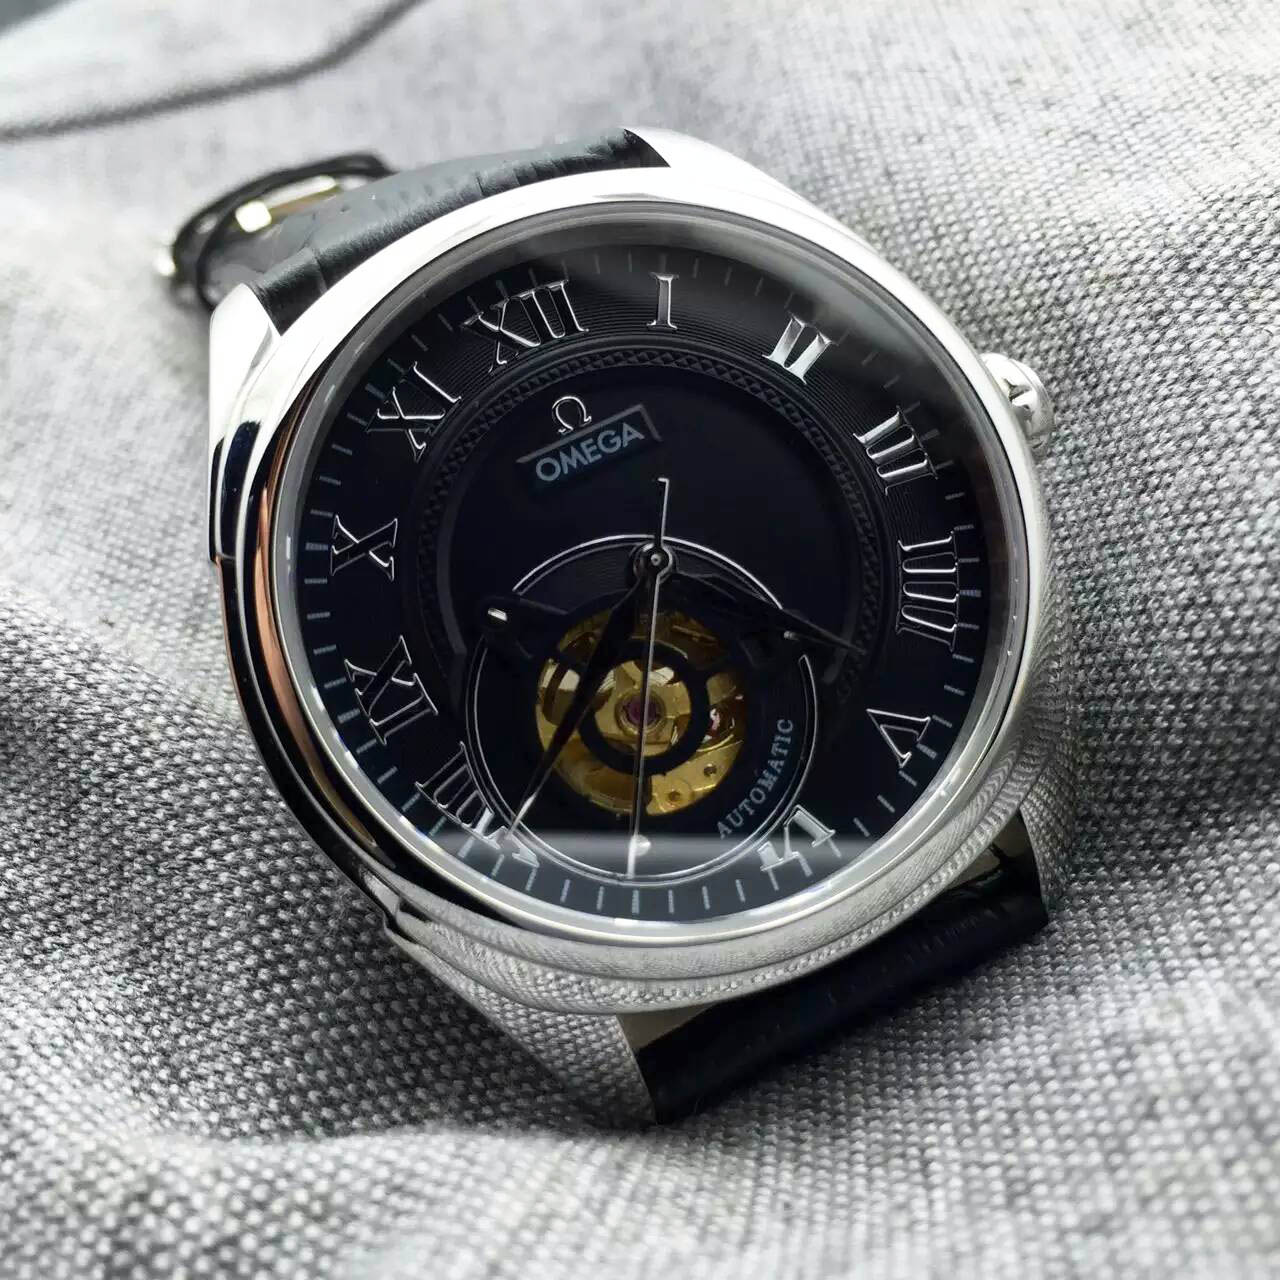 3A歐米茄 Omega 新款腕錶搭載進口82S7全自動機械機芯 熱門腕錶推薦 1:1手錶